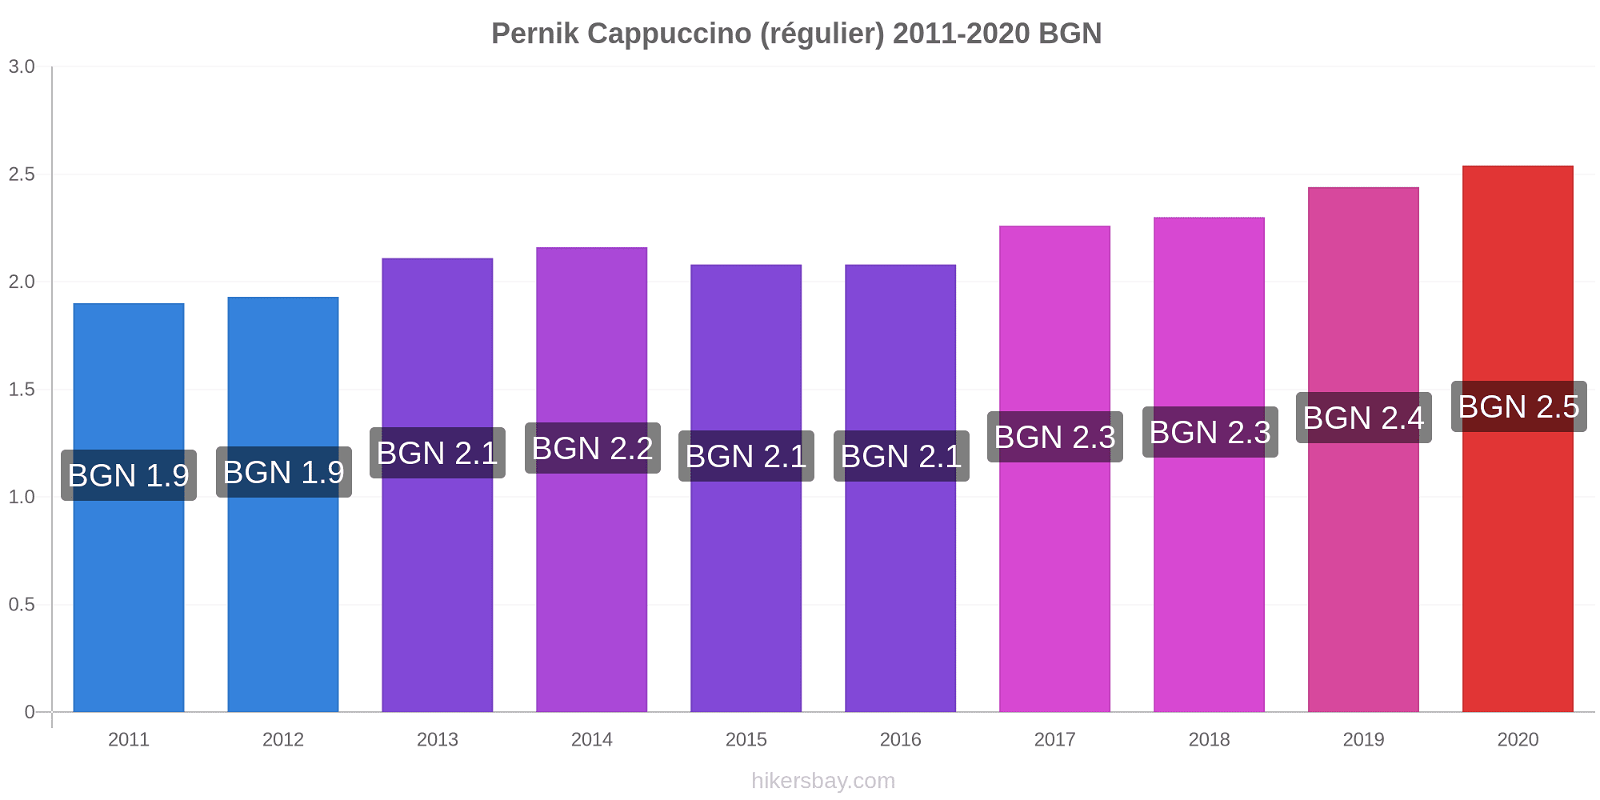 Pernik changements de prix Cappuccino (régulier) hikersbay.com